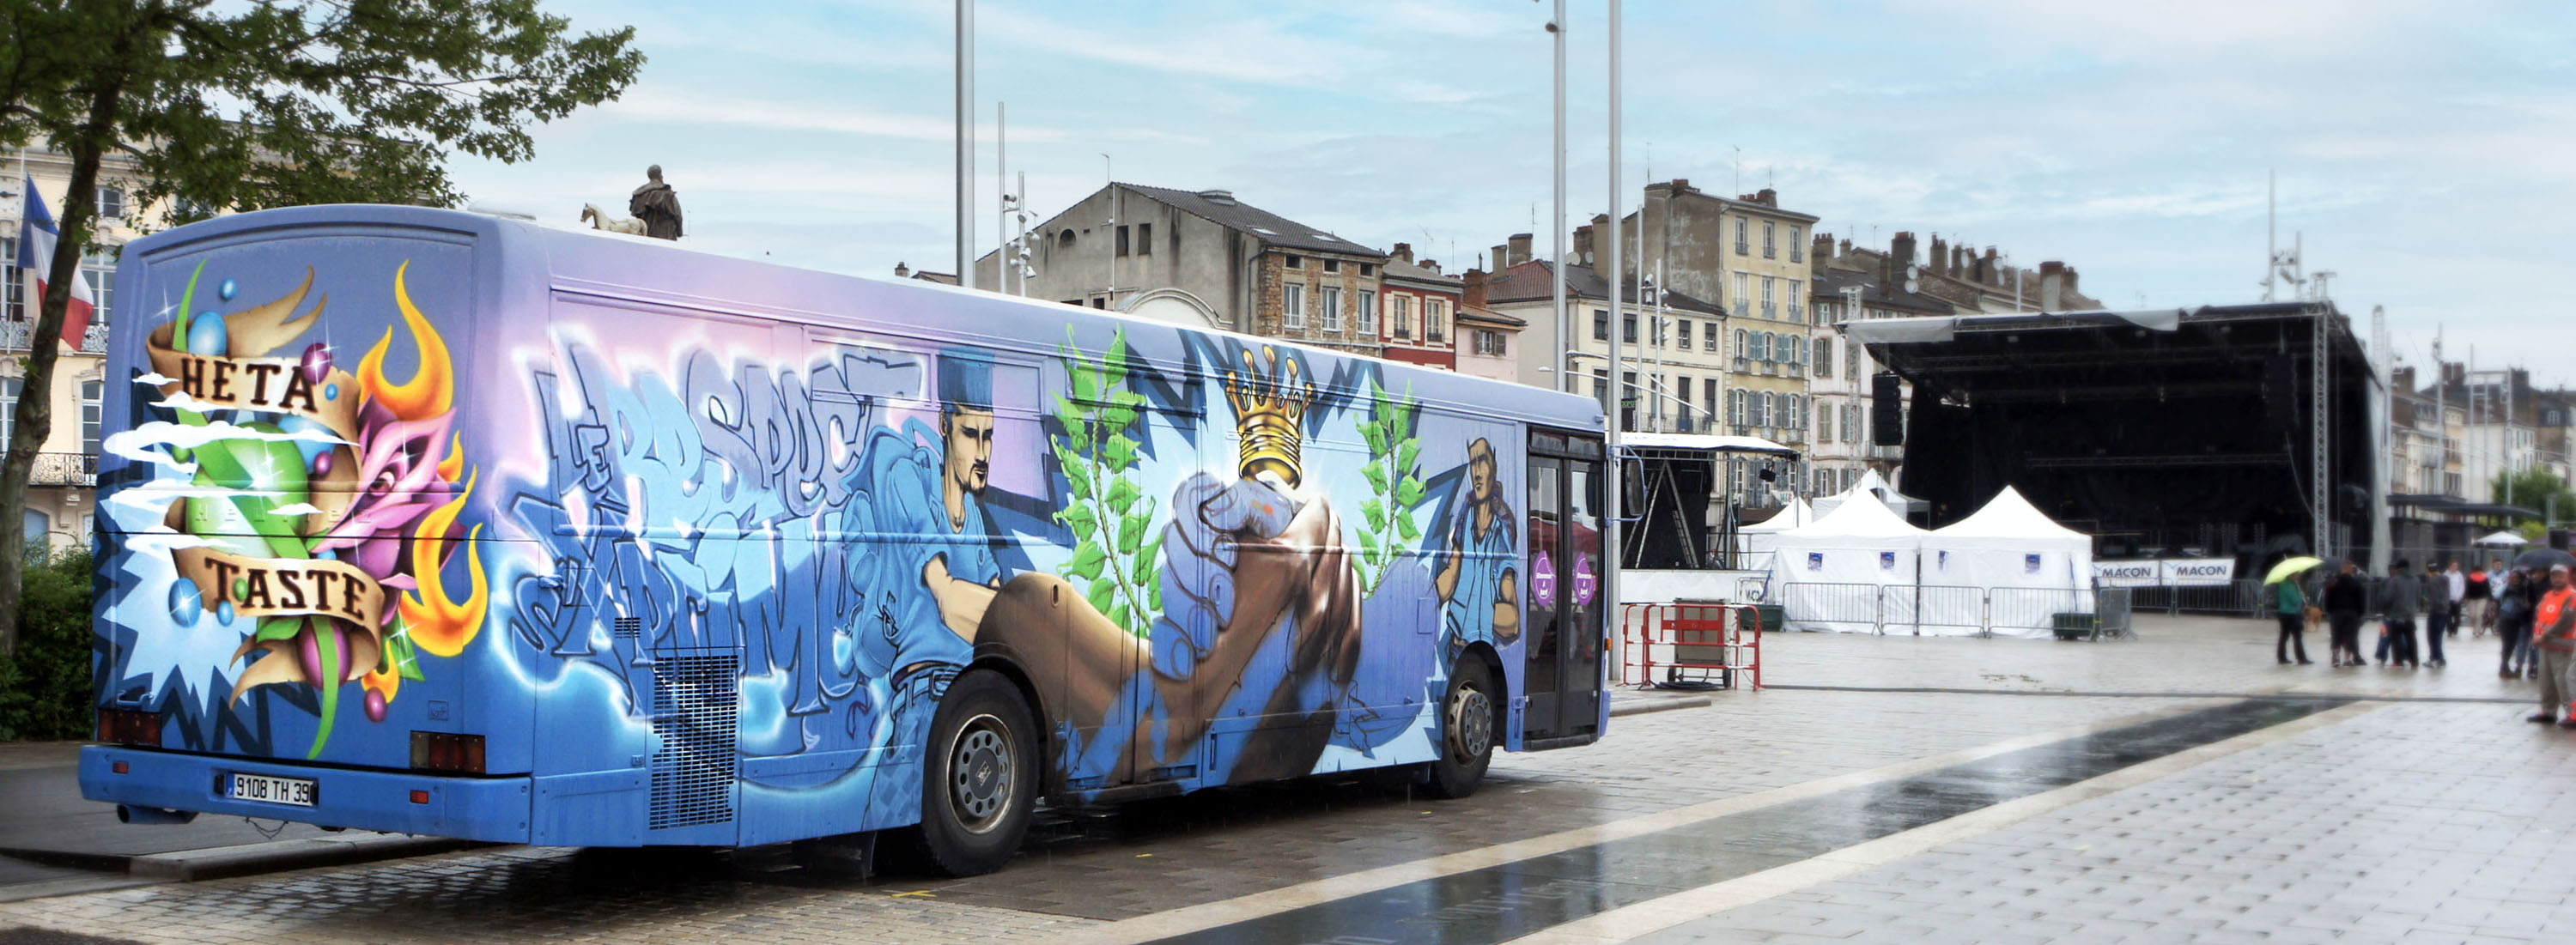 custom véhicule bus street art graffiti